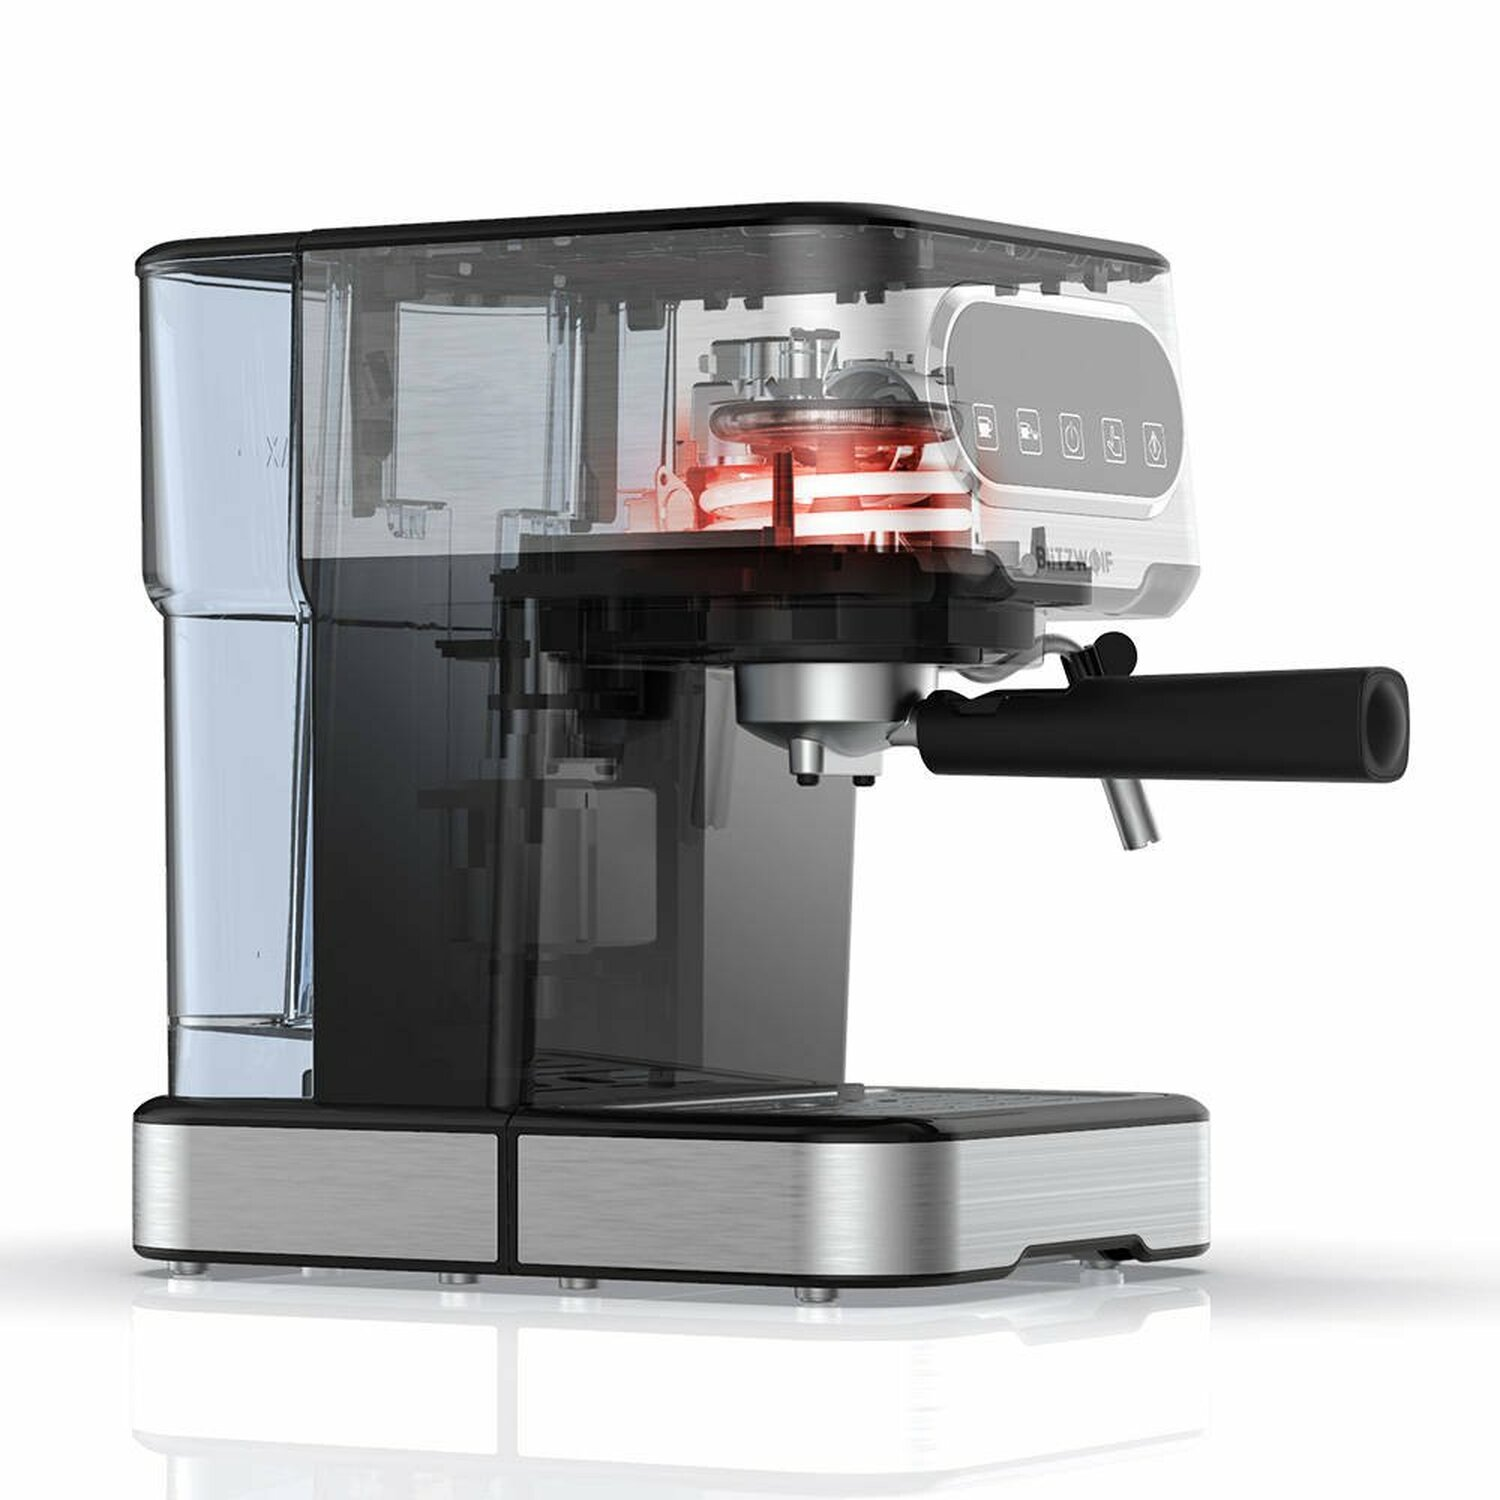 Espressomaschine BW-CMM2 Silber BLITZWOLF